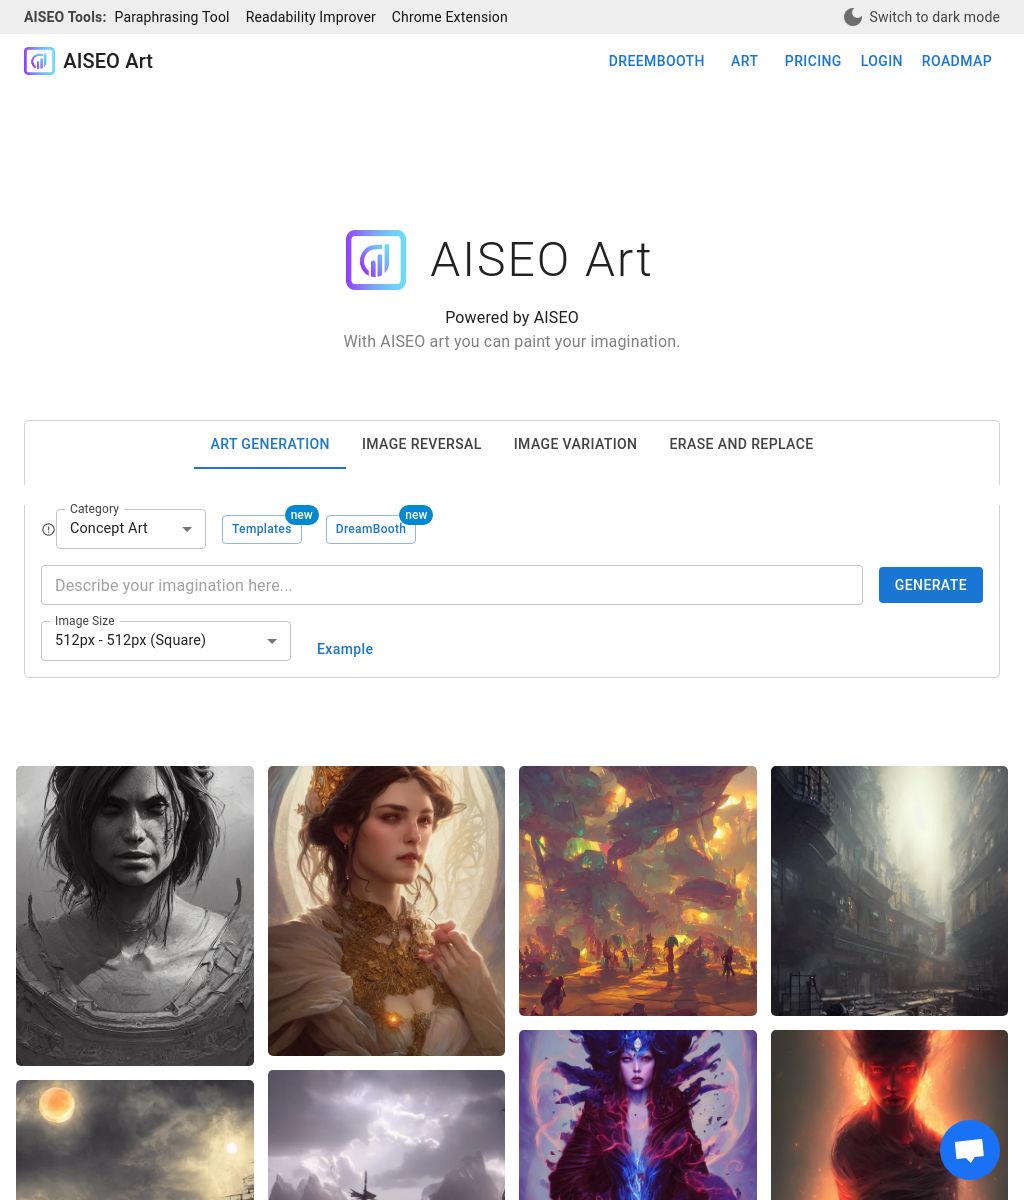 AISEO Art